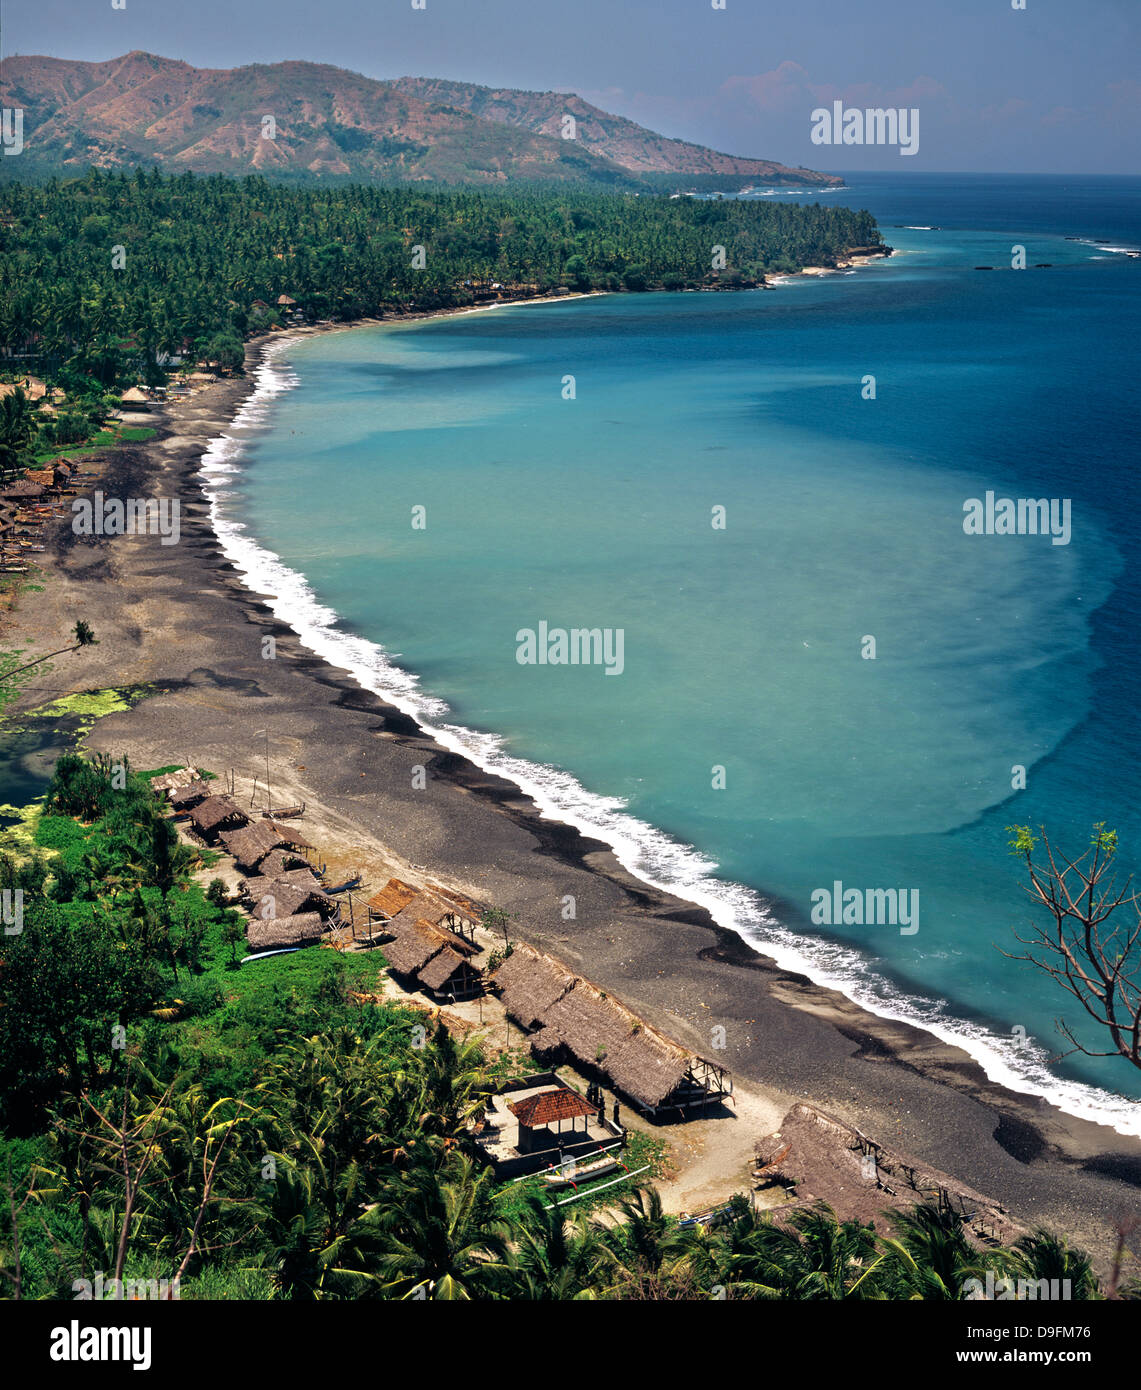 Vue de la côte de Bali près de Candi Dasa, Bali, Indonésie, Asie du sud-est Banque D'Images